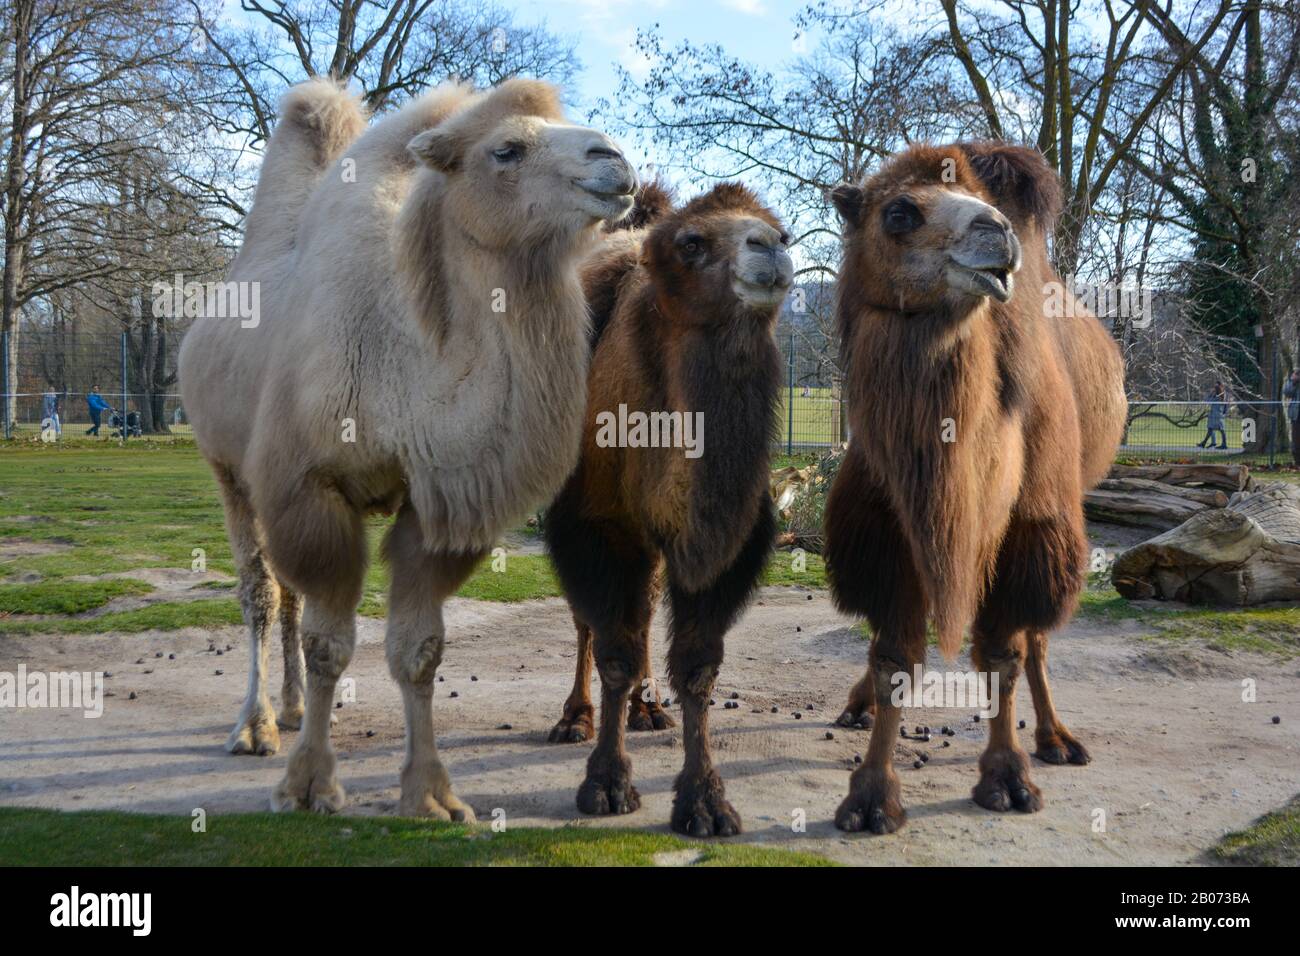 Tre cammelli sono in linea. Cammelli allo zoo, chiamato Wilhelma nel sud della Germania Foto Stock